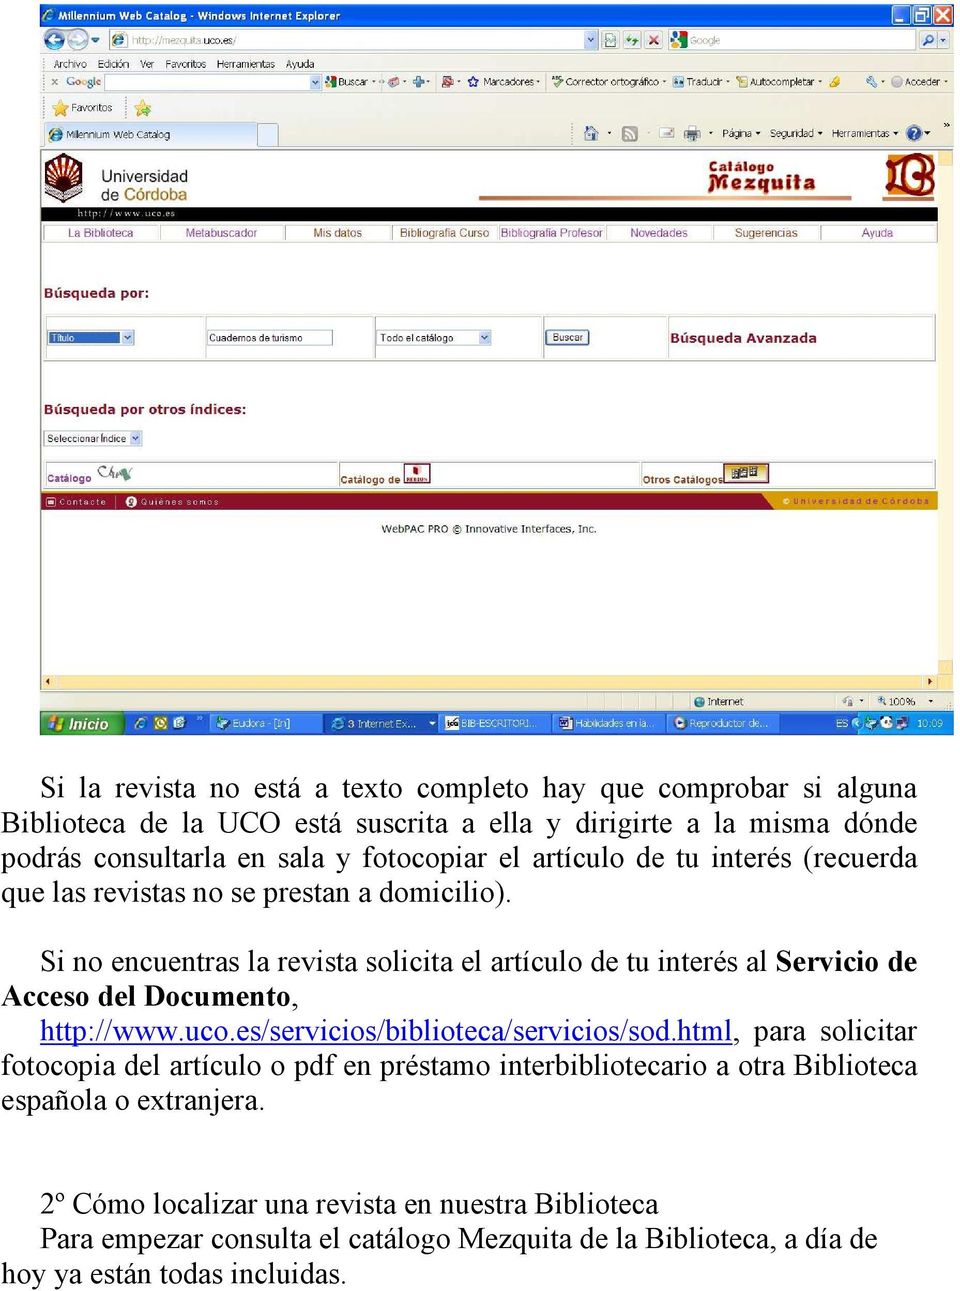 Si no encuentras la revista solicita el artículo de tu interés al Servicio de Acceso del Documento, http://www.uco.es/servicios/biblioteca/servicios/sod.